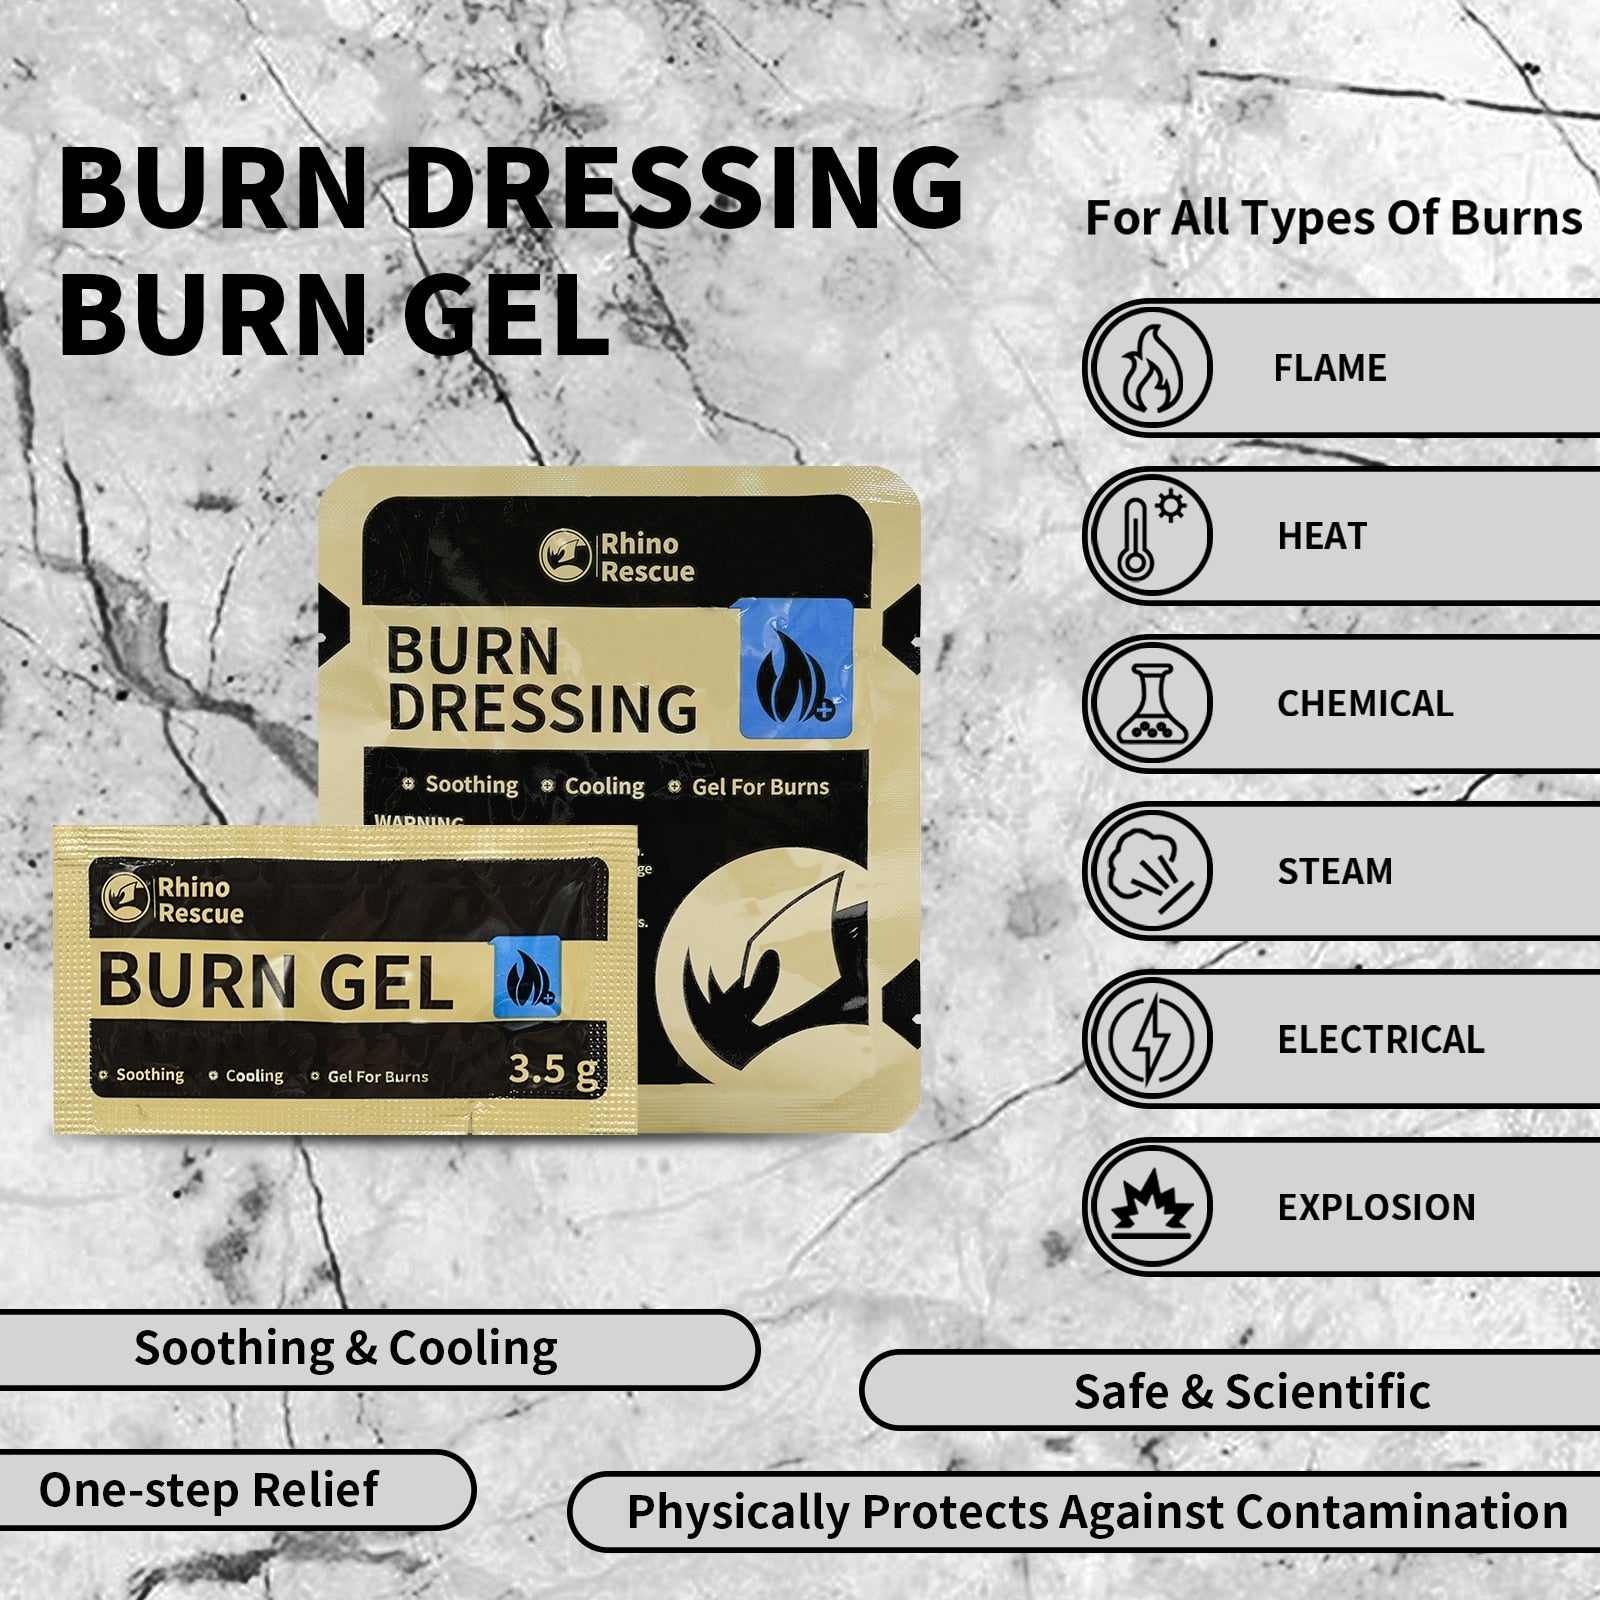 Burn Care Kit